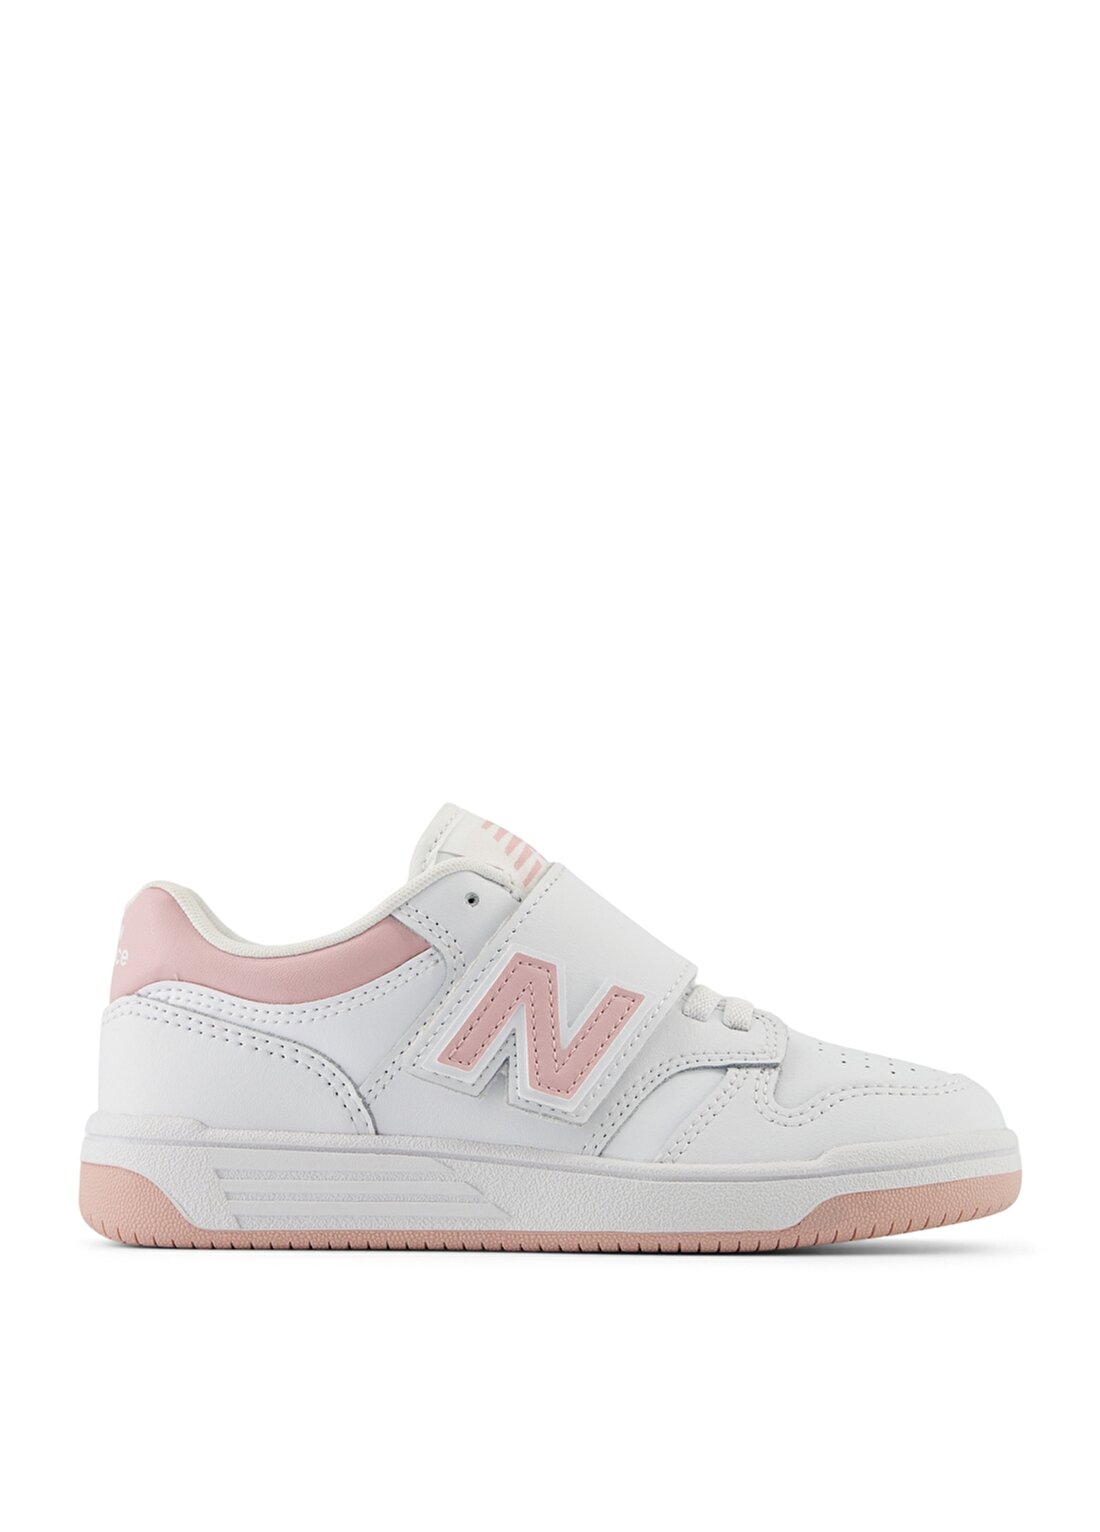 New Balance Beyaz Kız Çocuk Yürüyüş Ayakkabısı PHB480OP-Lifestyle Preschool Shoes